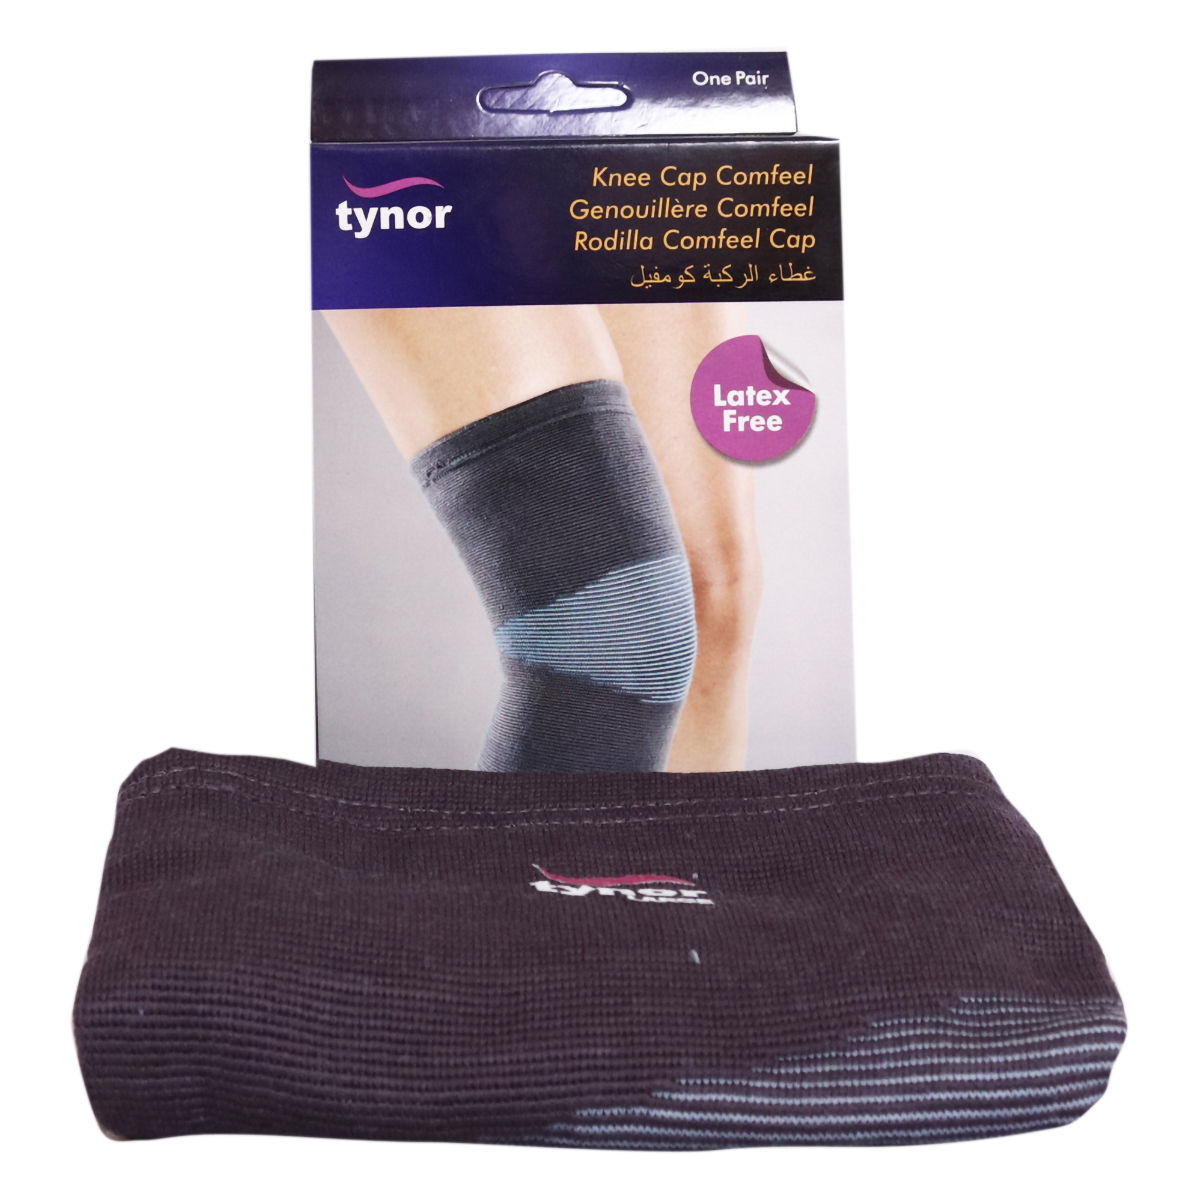 Buy Tynor Knee Cap Comfeel Large, 1 Pair Online